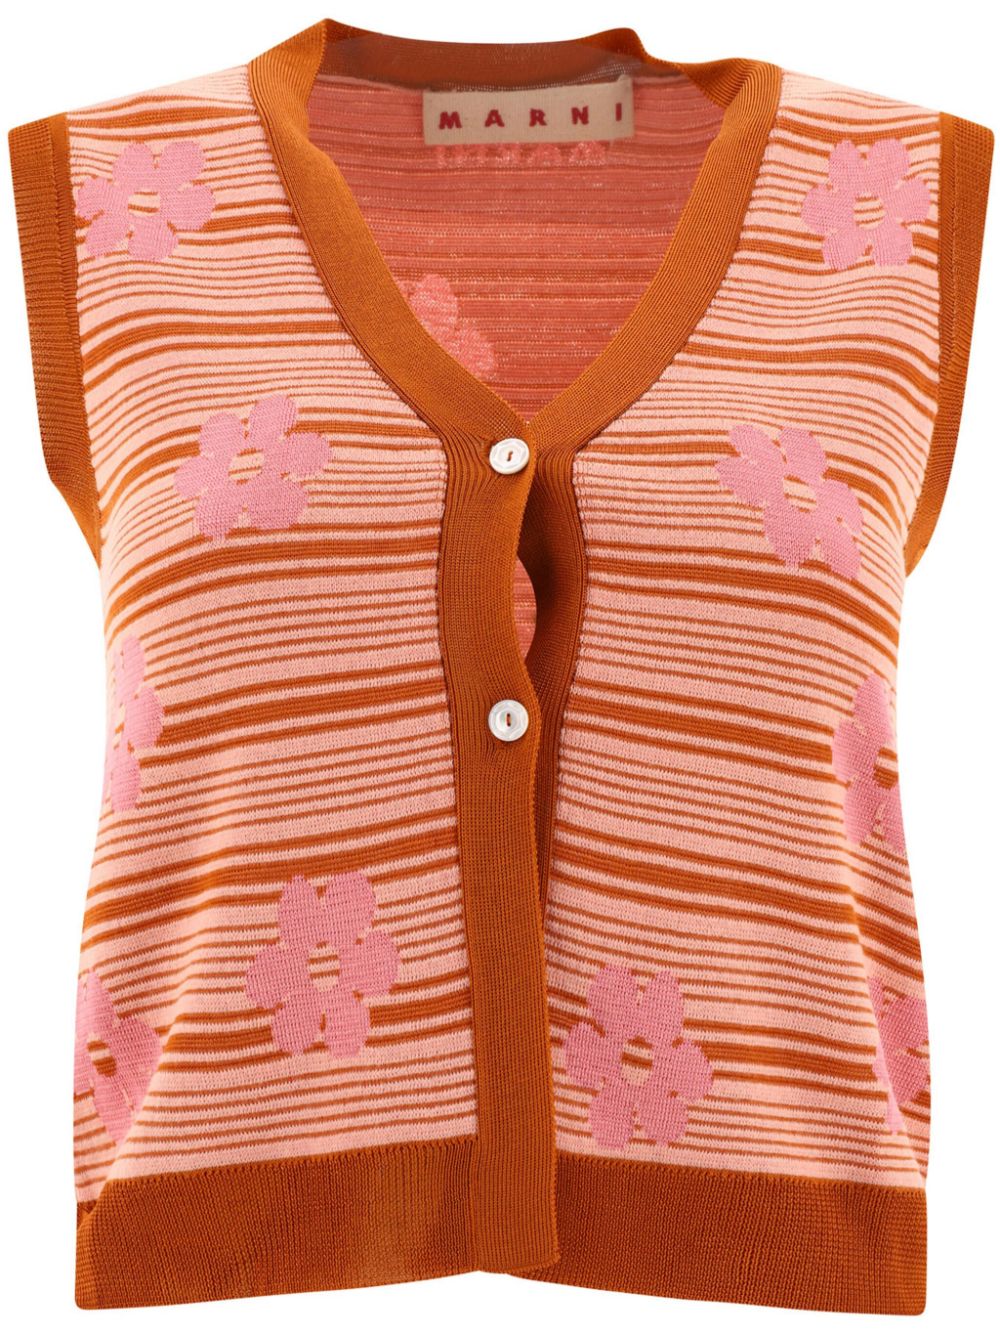 Marni striped knitted cotton vest - Pink von Marni